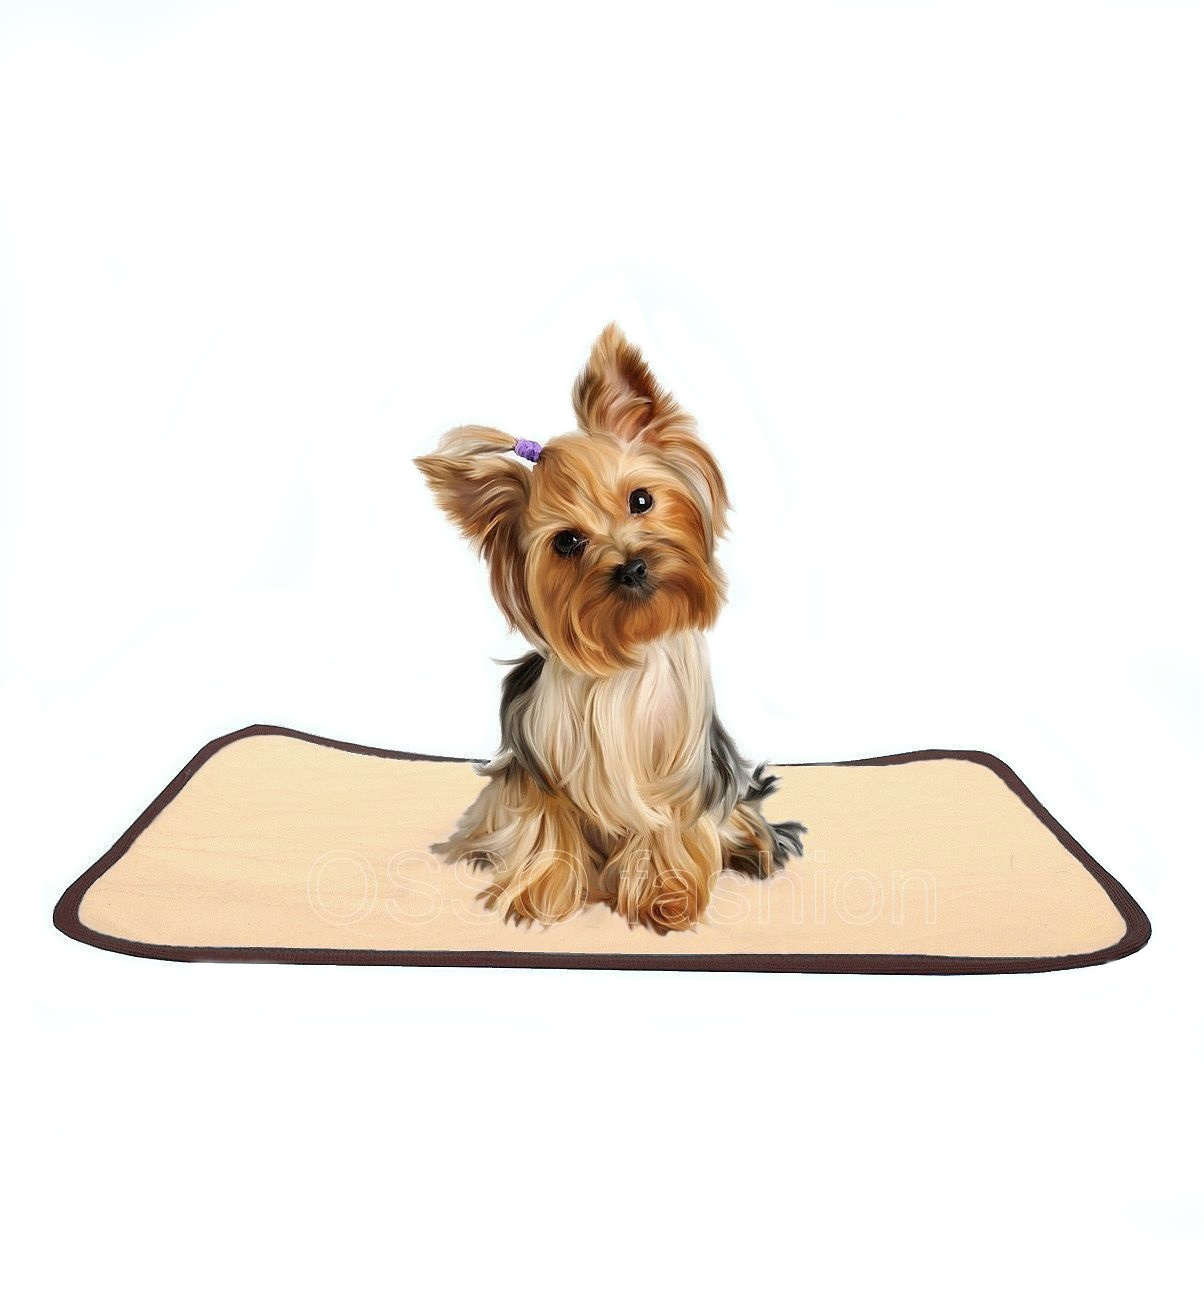 OSSO OSSO пеленка для собак многоразовая впитывающая (коричневая) (60*70 см) пеленка osso fashion для собак многоразовая впитывающая коричневая 30х40 см